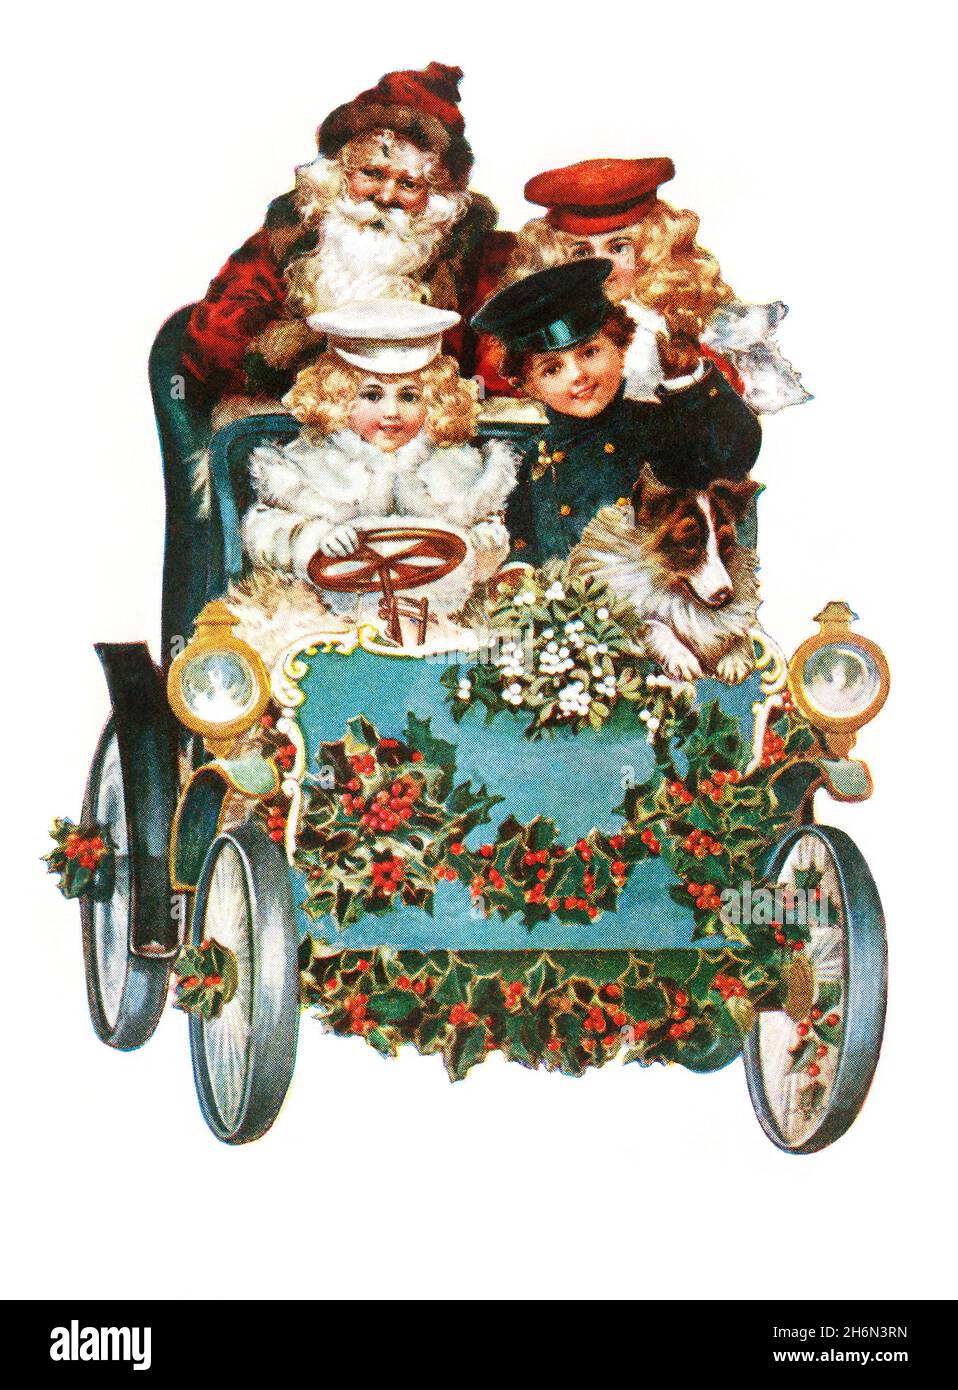 Santa en voiture avec des enfants Banque D'Images